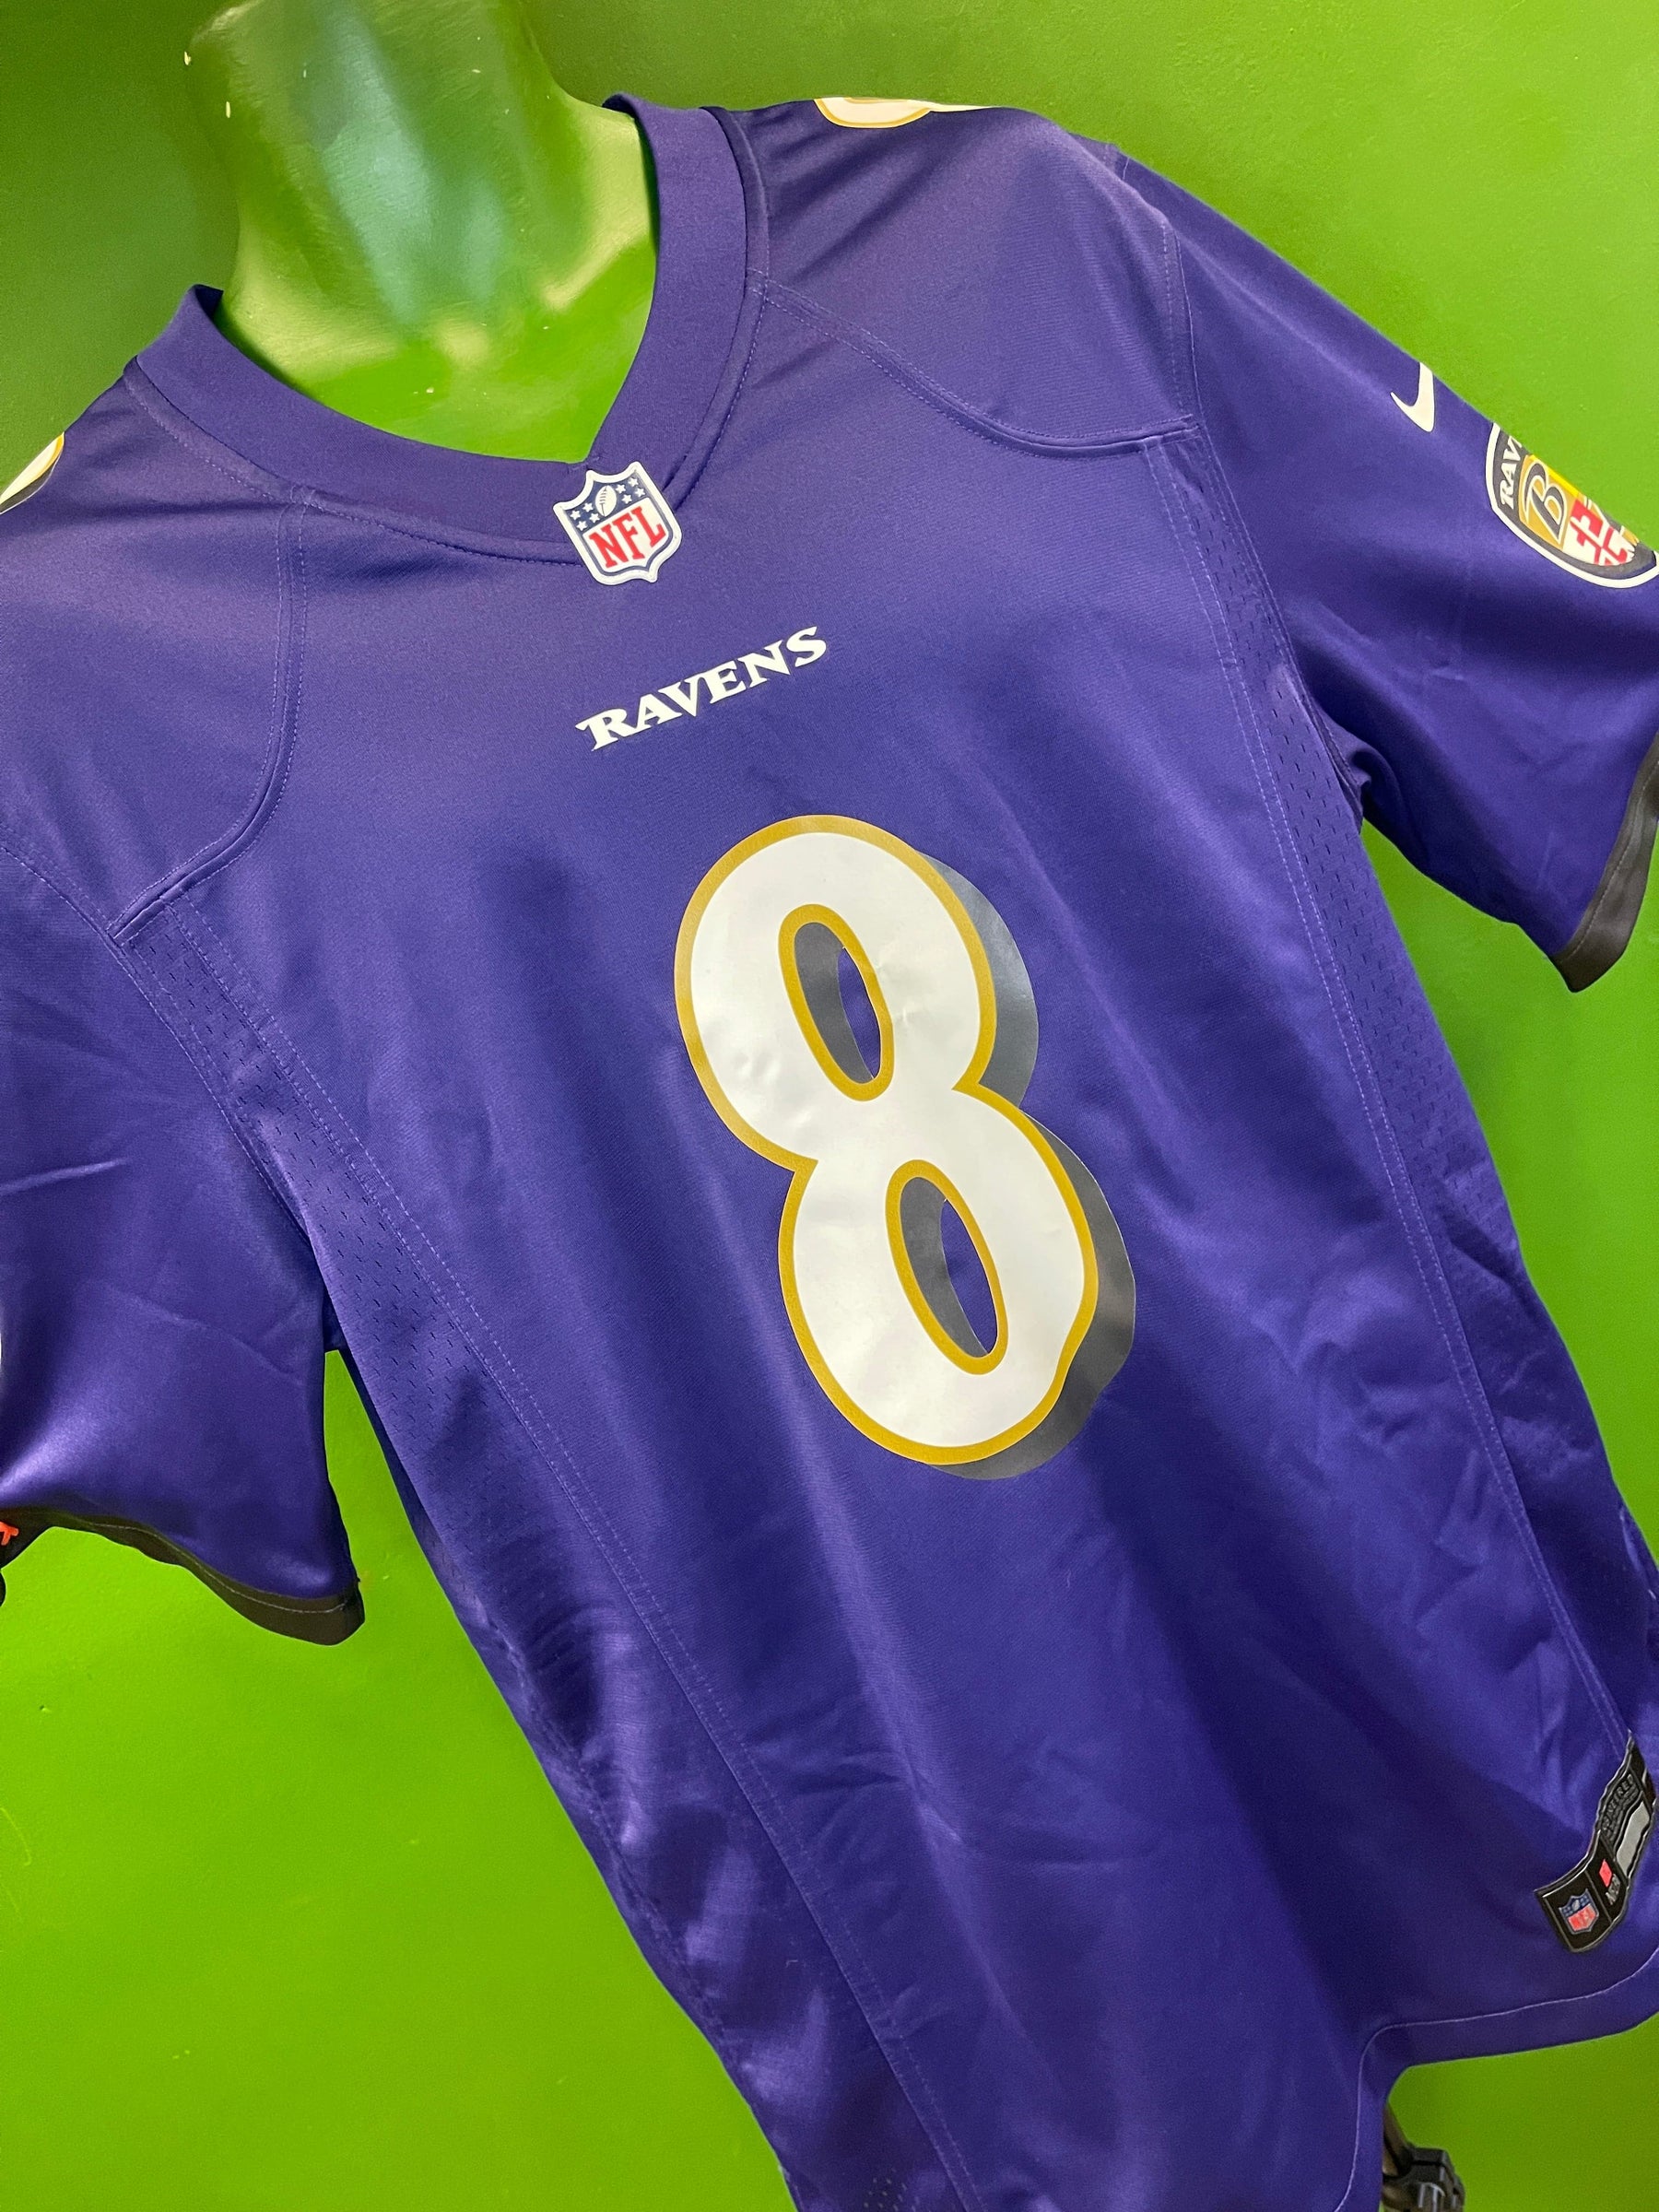 NFL Baltimore Ravens Lamar Jackson #8 Game Jersey Men's Medium NWOT